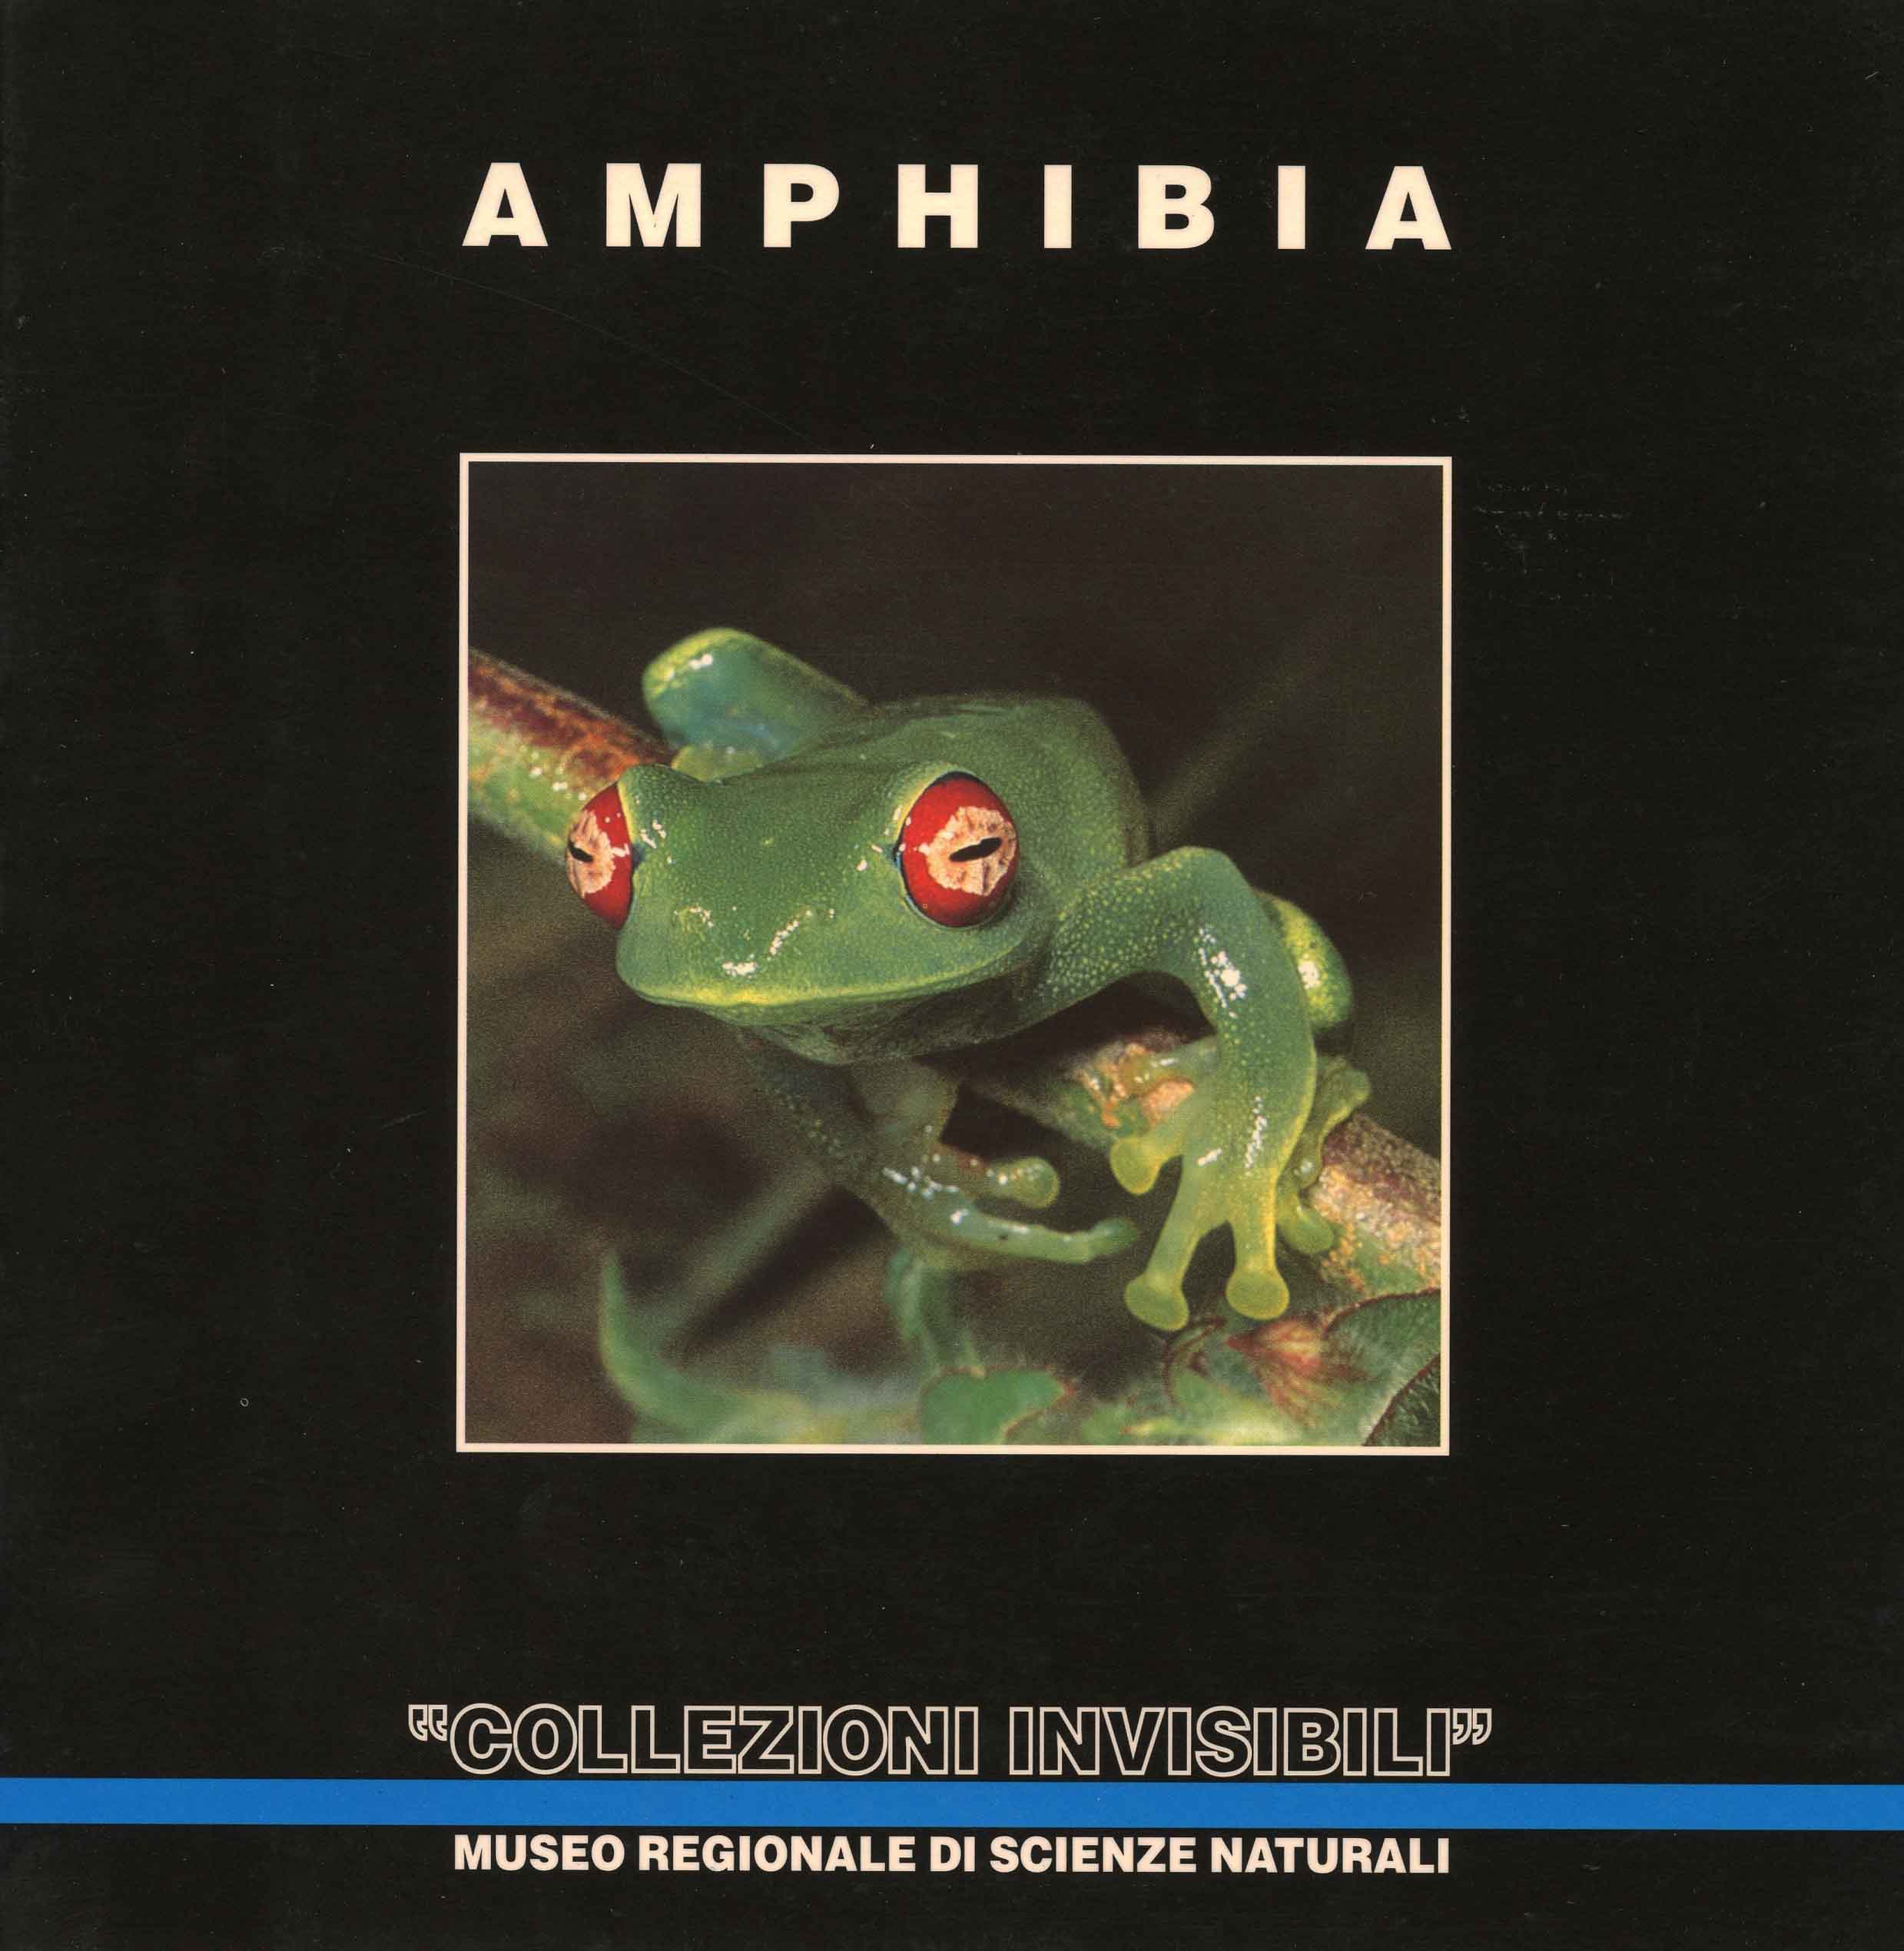 Image for "Collezioni Invisibli": Amphibia